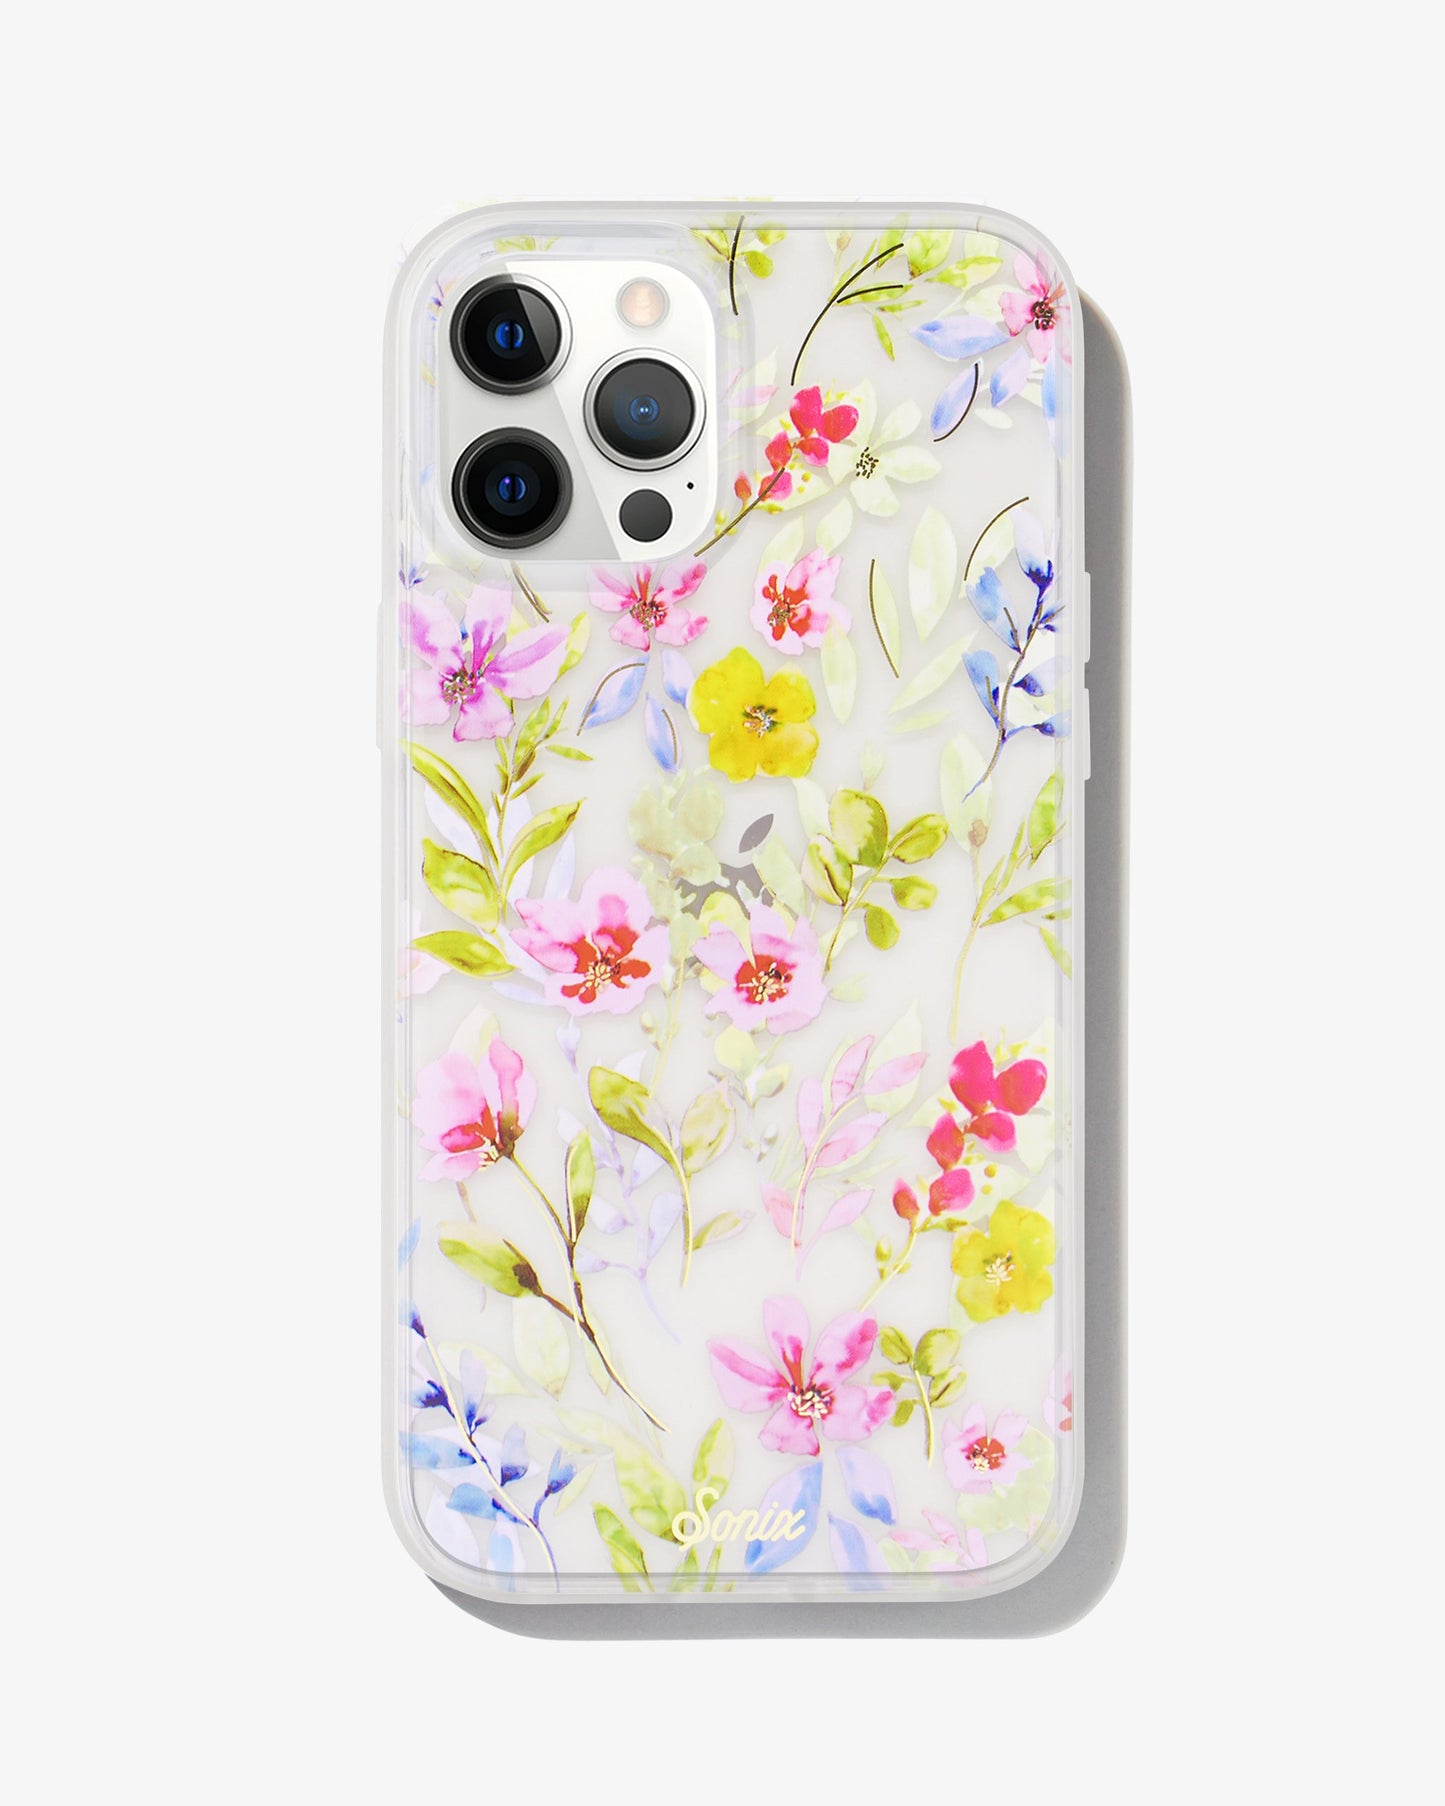 Prairie Floral iPhone Case